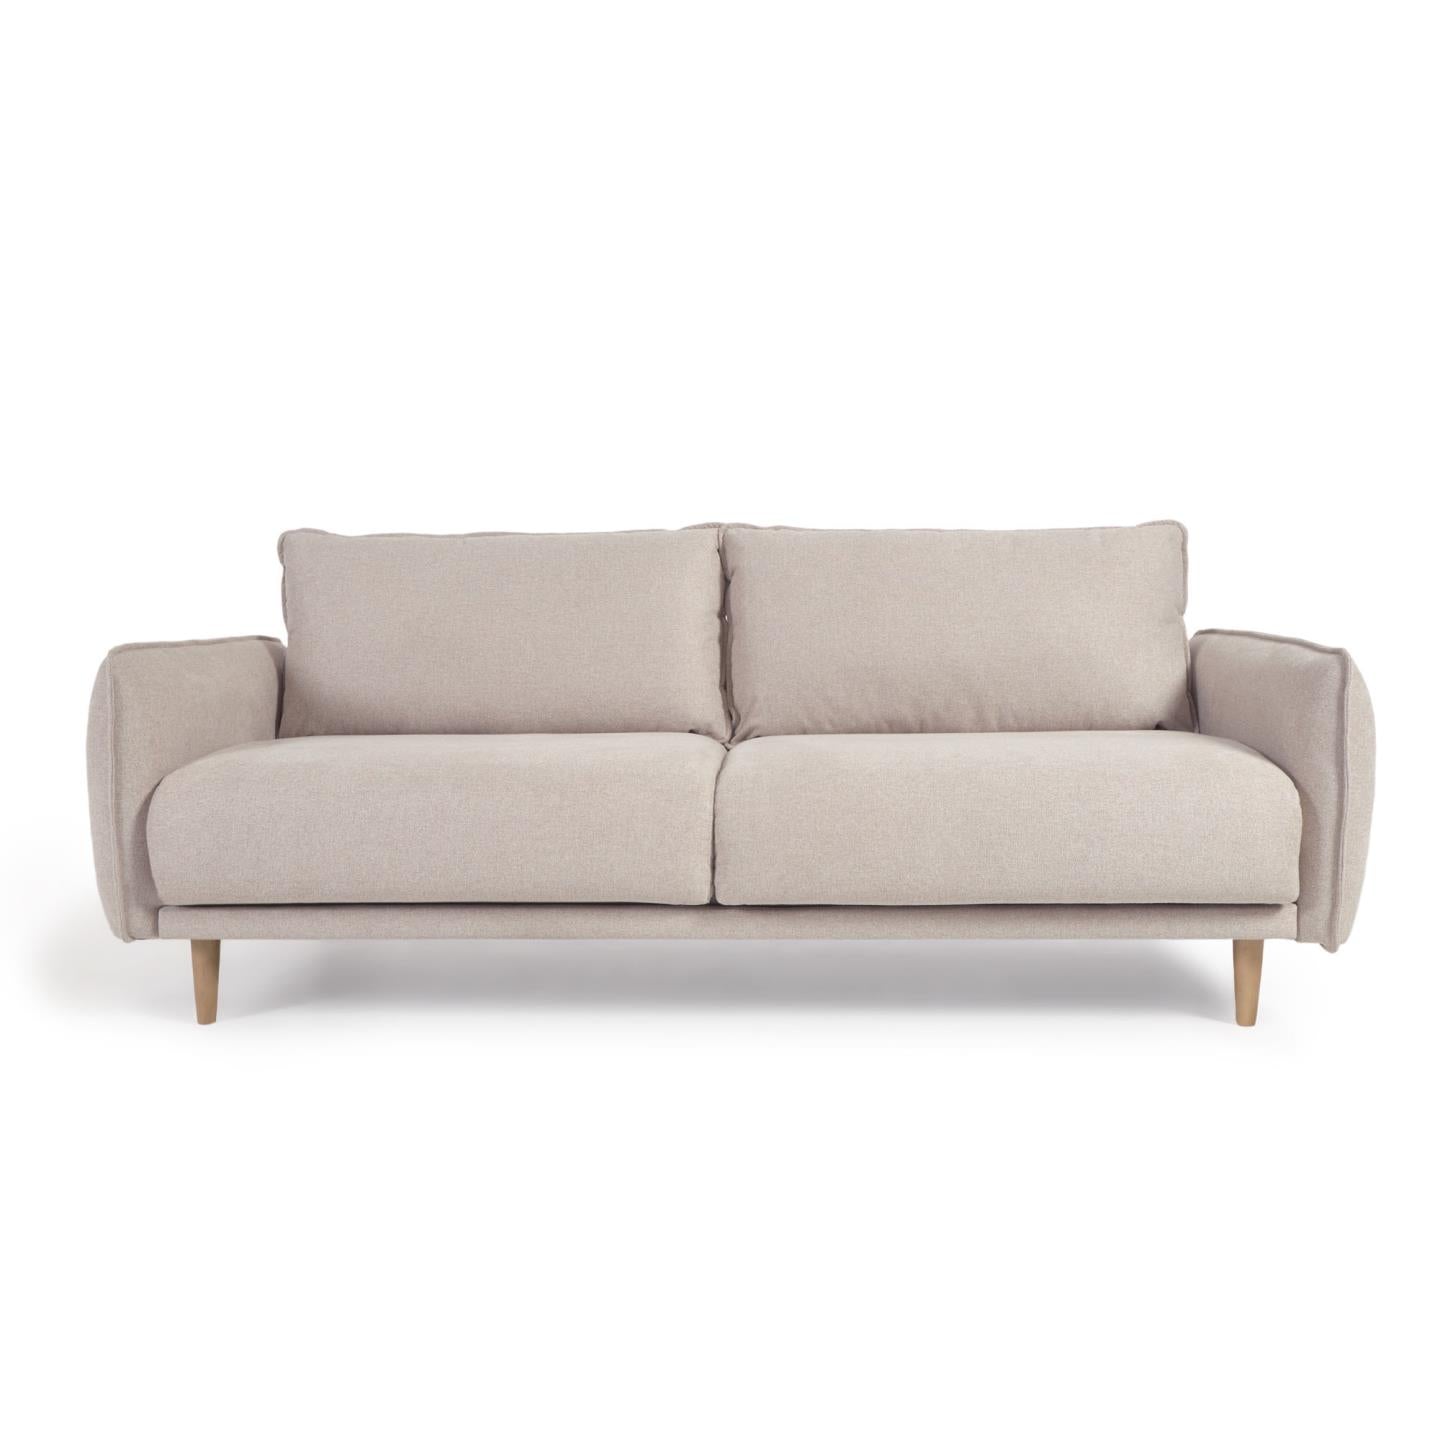 3 személyes Carlota kanapé bézs színben, 213 cm